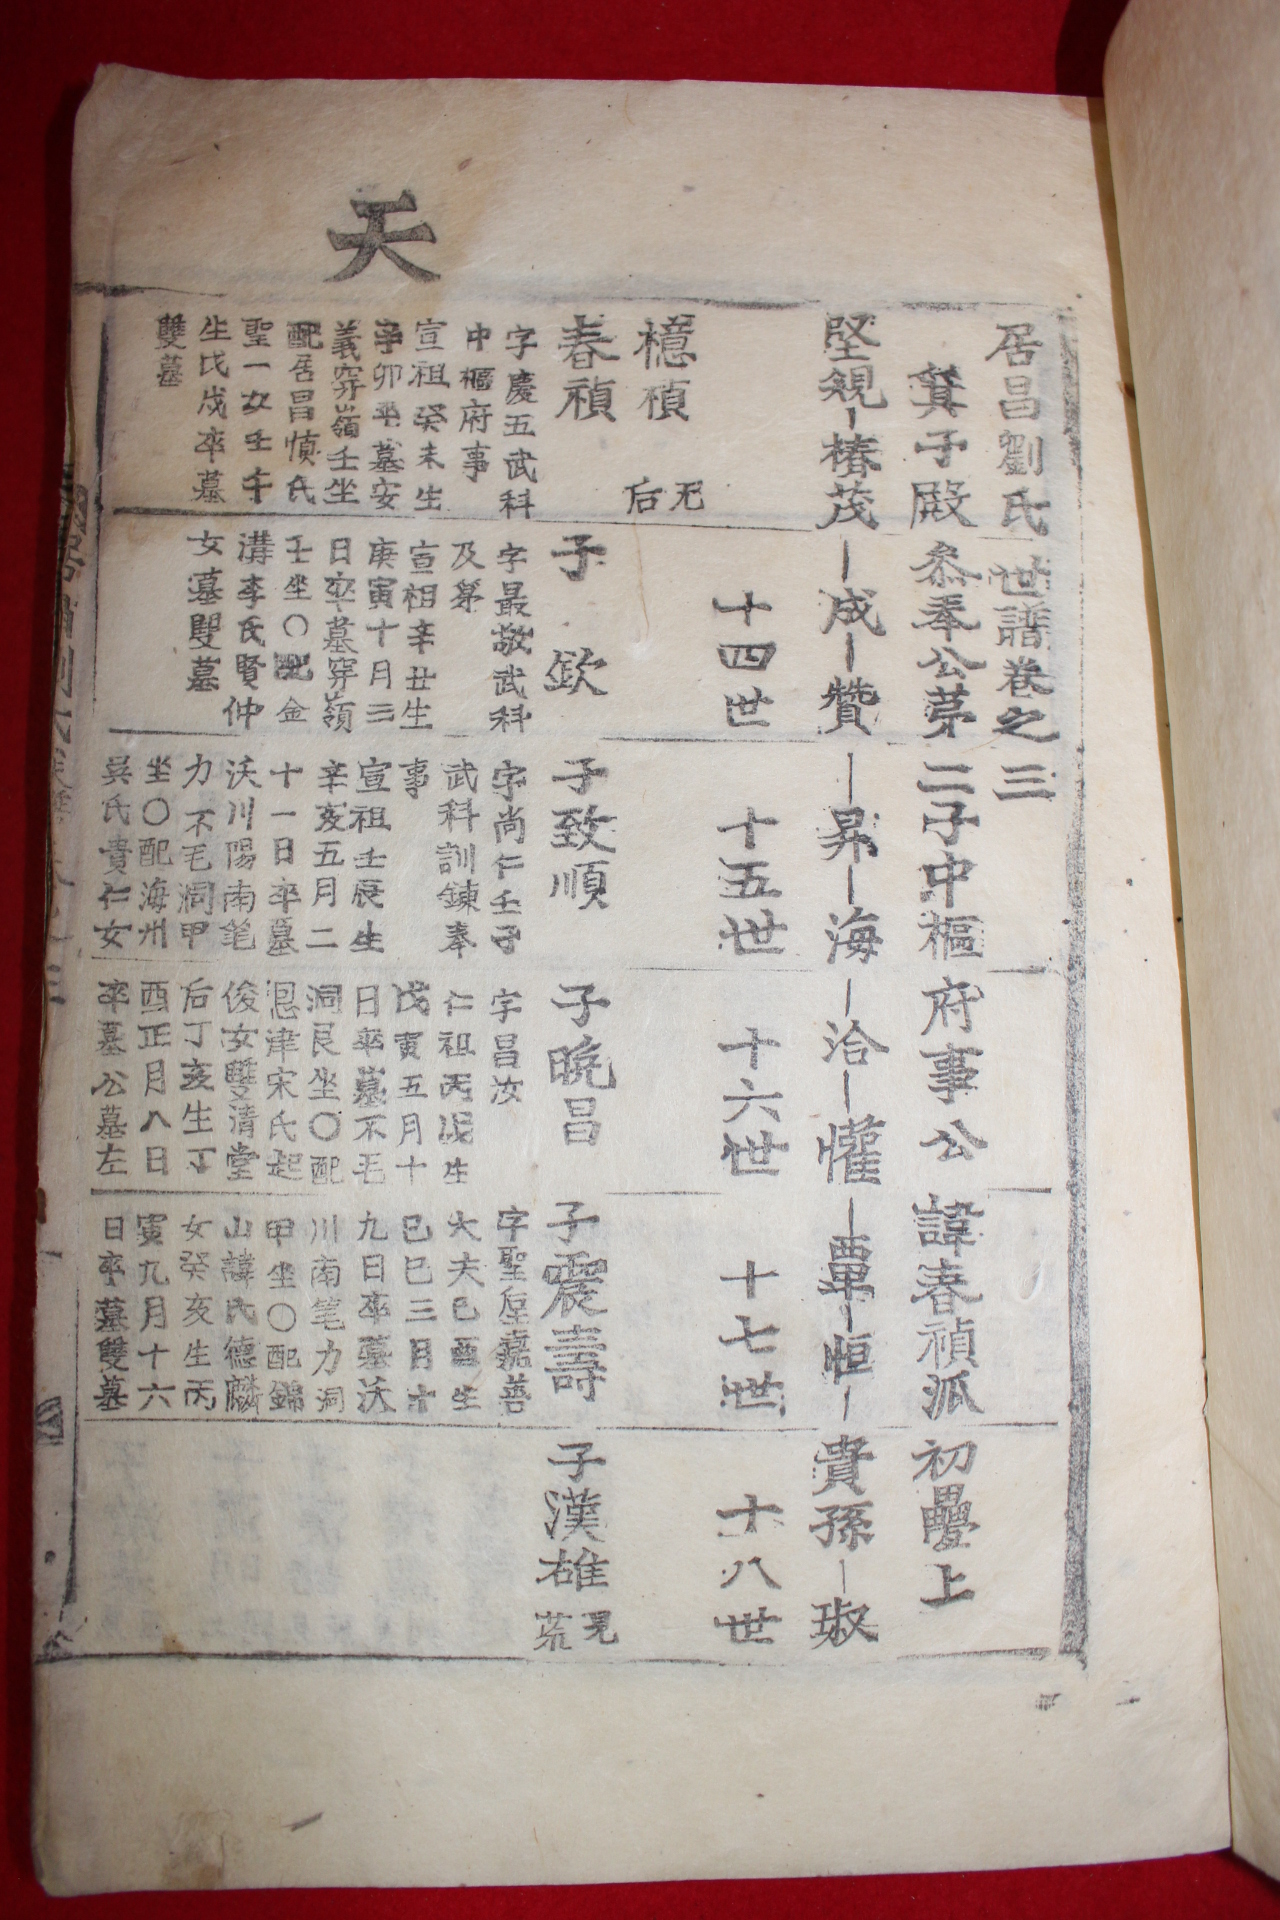 1911년(重光大淵獻) 목활자본 거창류씨세보(居昌劉氏世譜) 7권5책완질